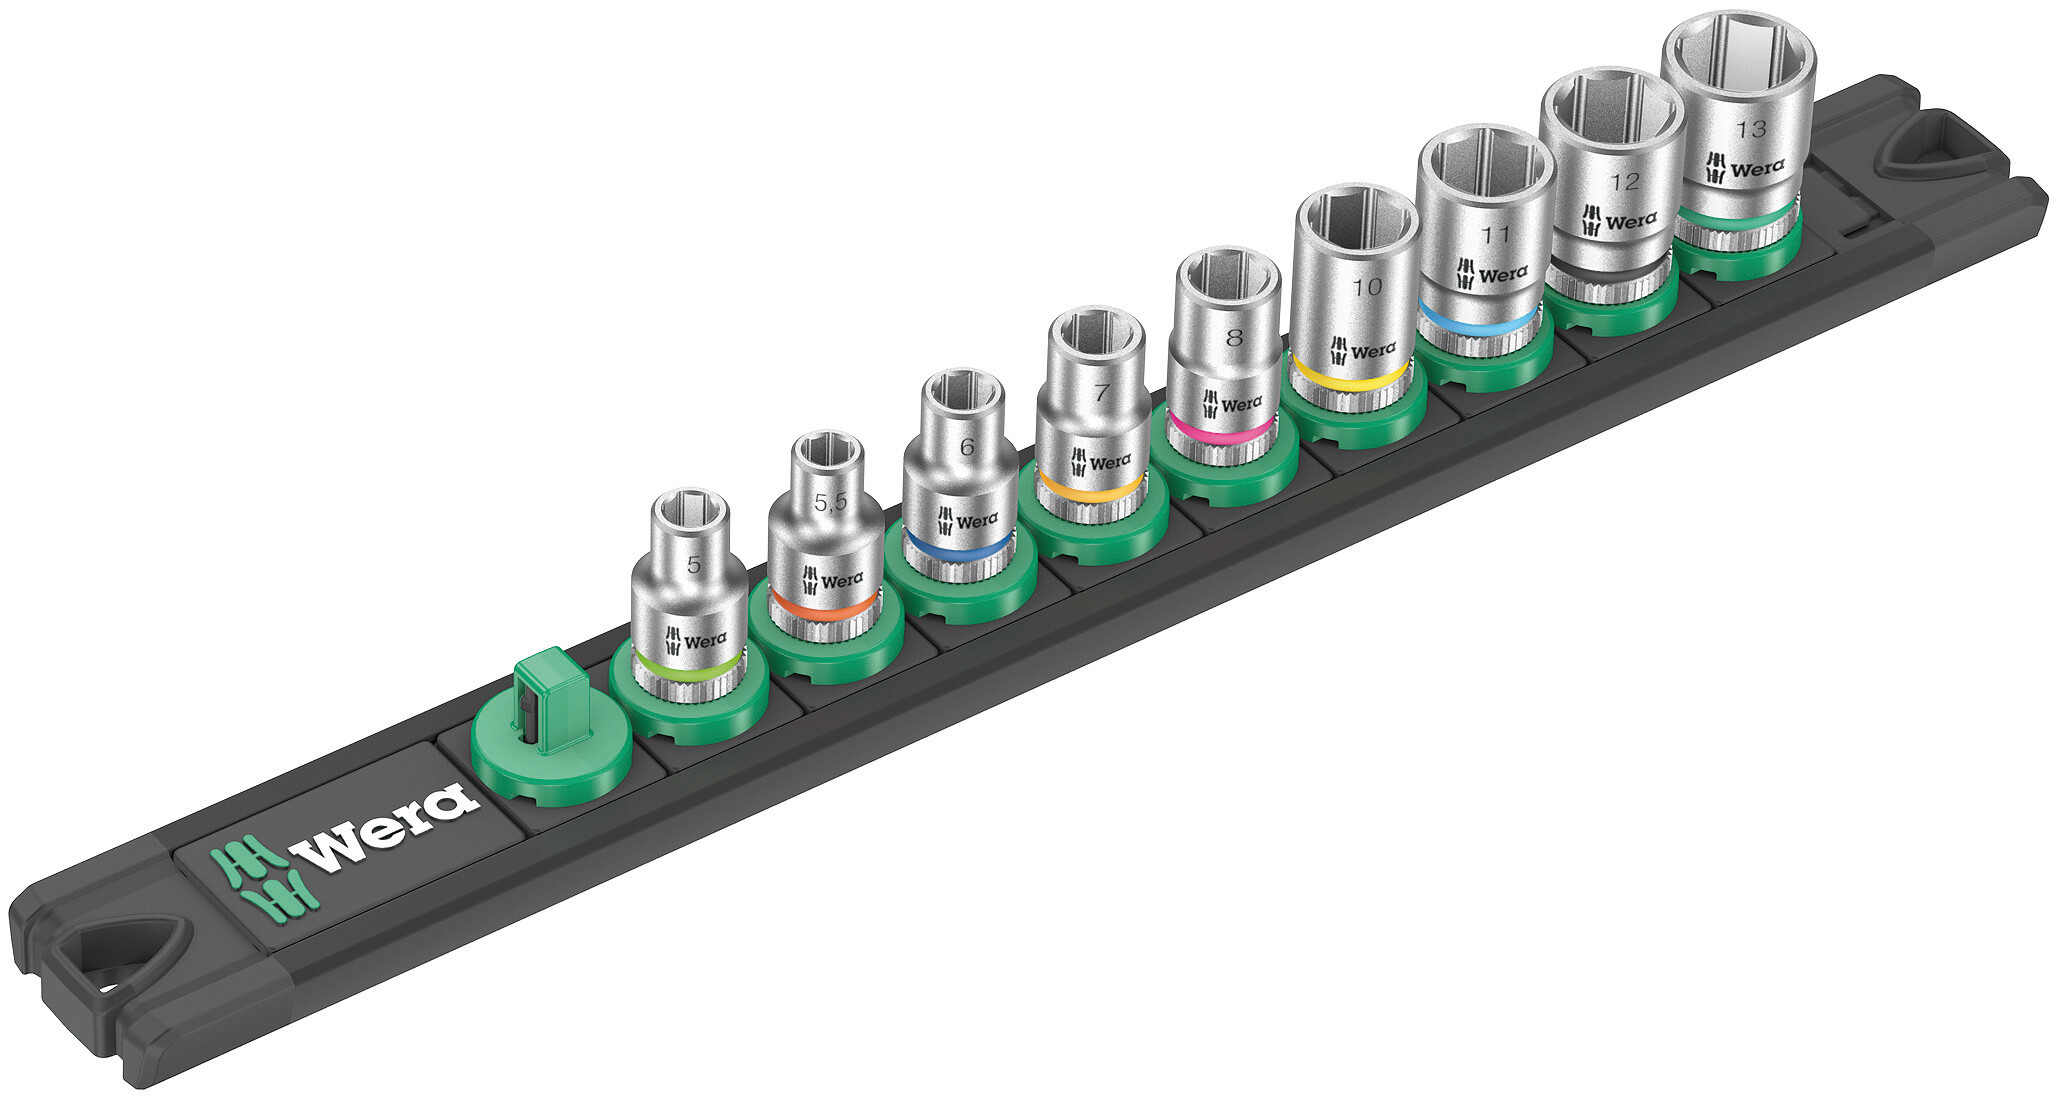 Die Wera Nuss-Magnetleiste A 4 mit 9 Hand- und Maschinensteckschlüssel-Einsätzen (non-impact), 1/4". Ein leichtgängiger Drehmechanismus sorgt